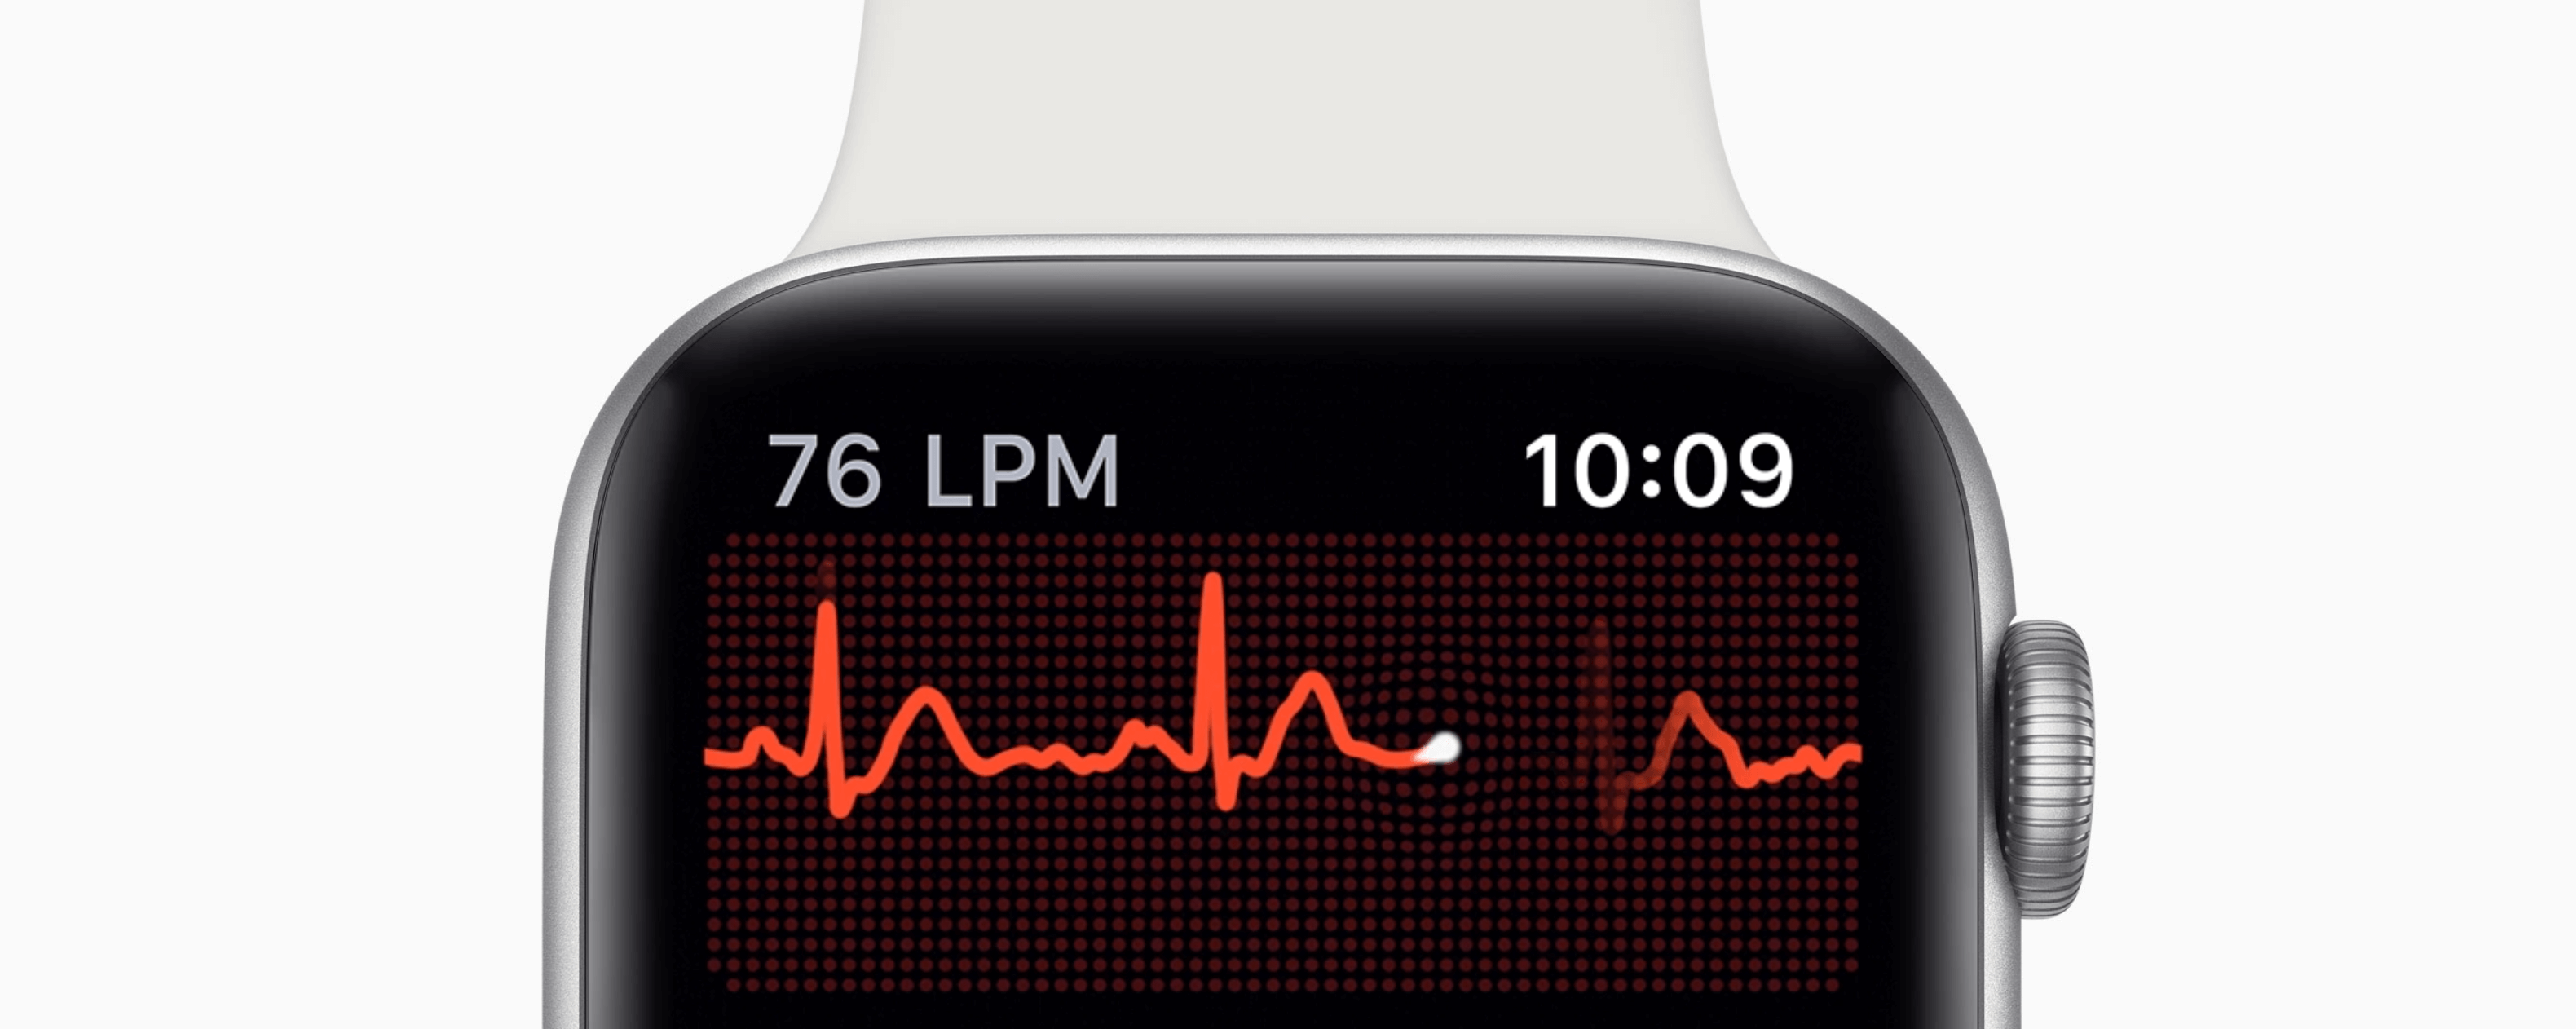 Algunos detalles sobre el electrocardiograma del Apple Watch